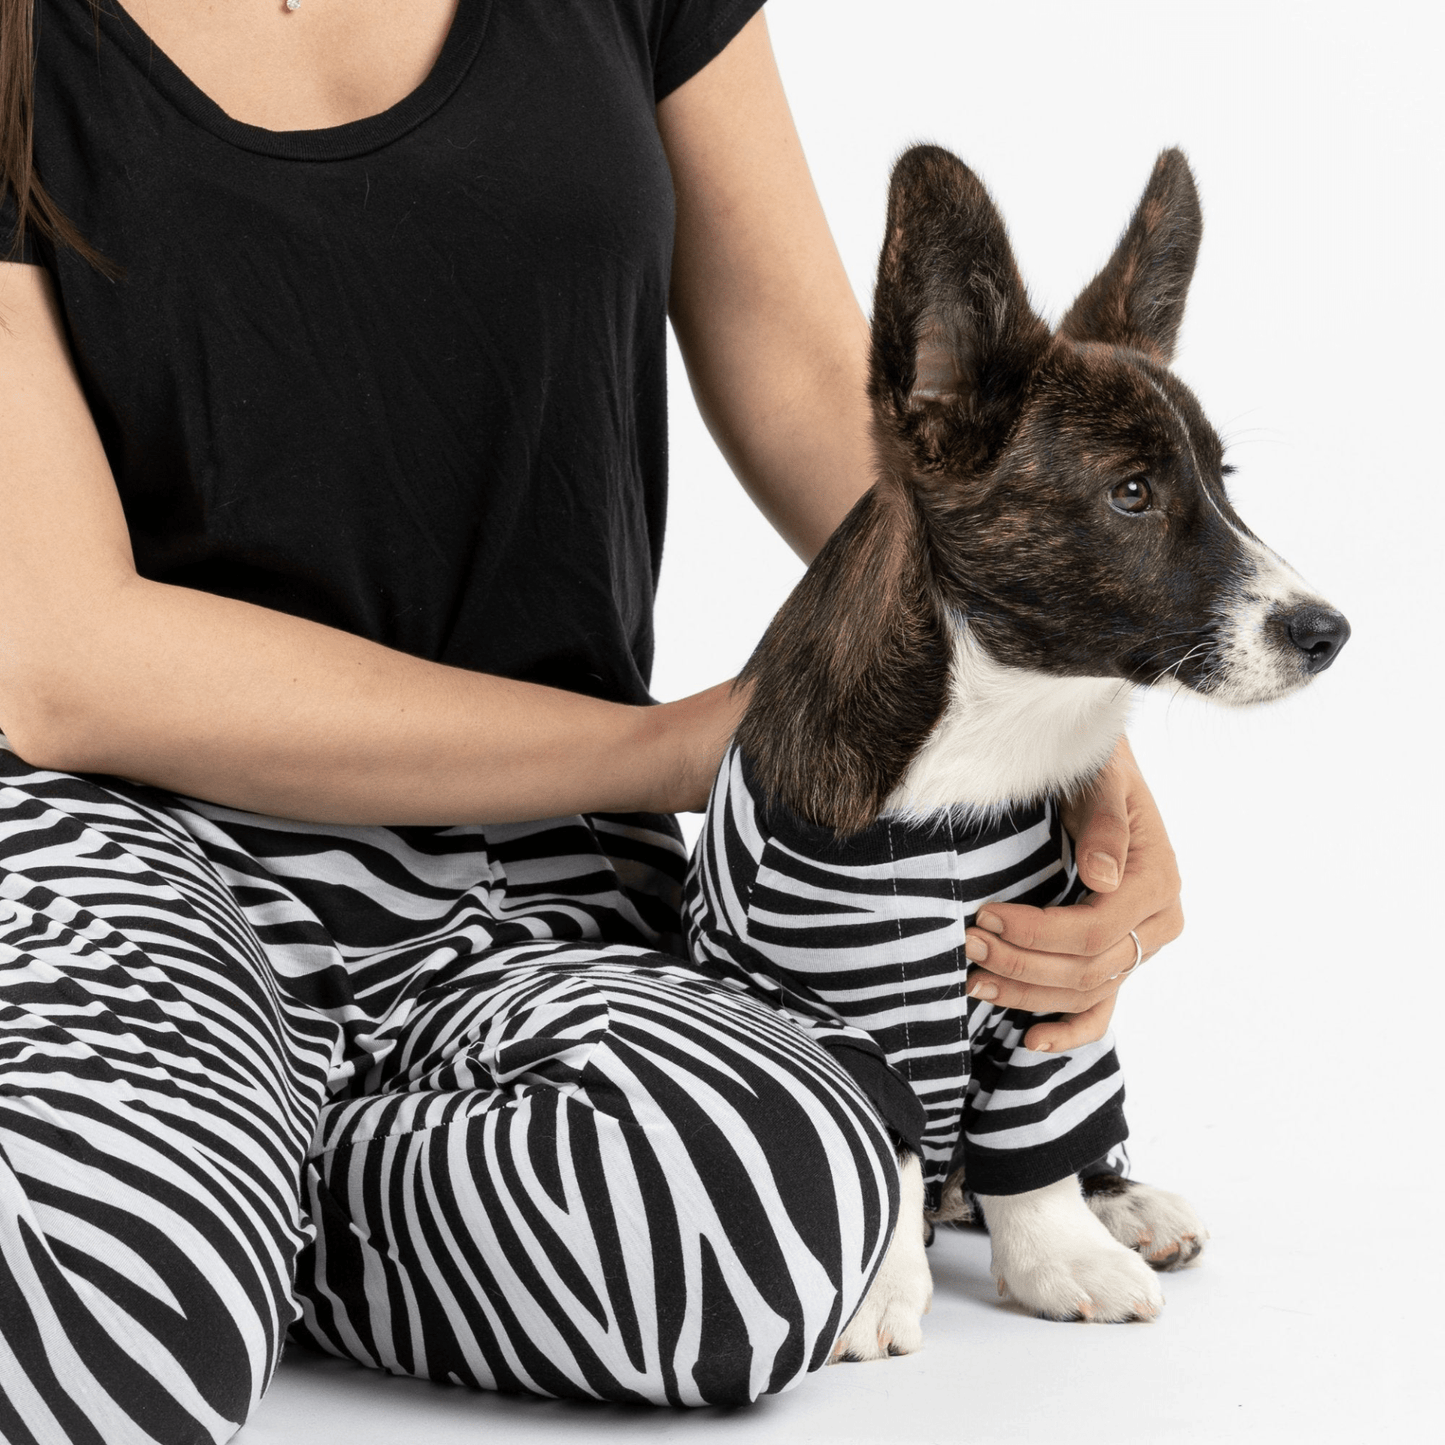 Dog and Pet Stuff Dog Pajama - Zebra